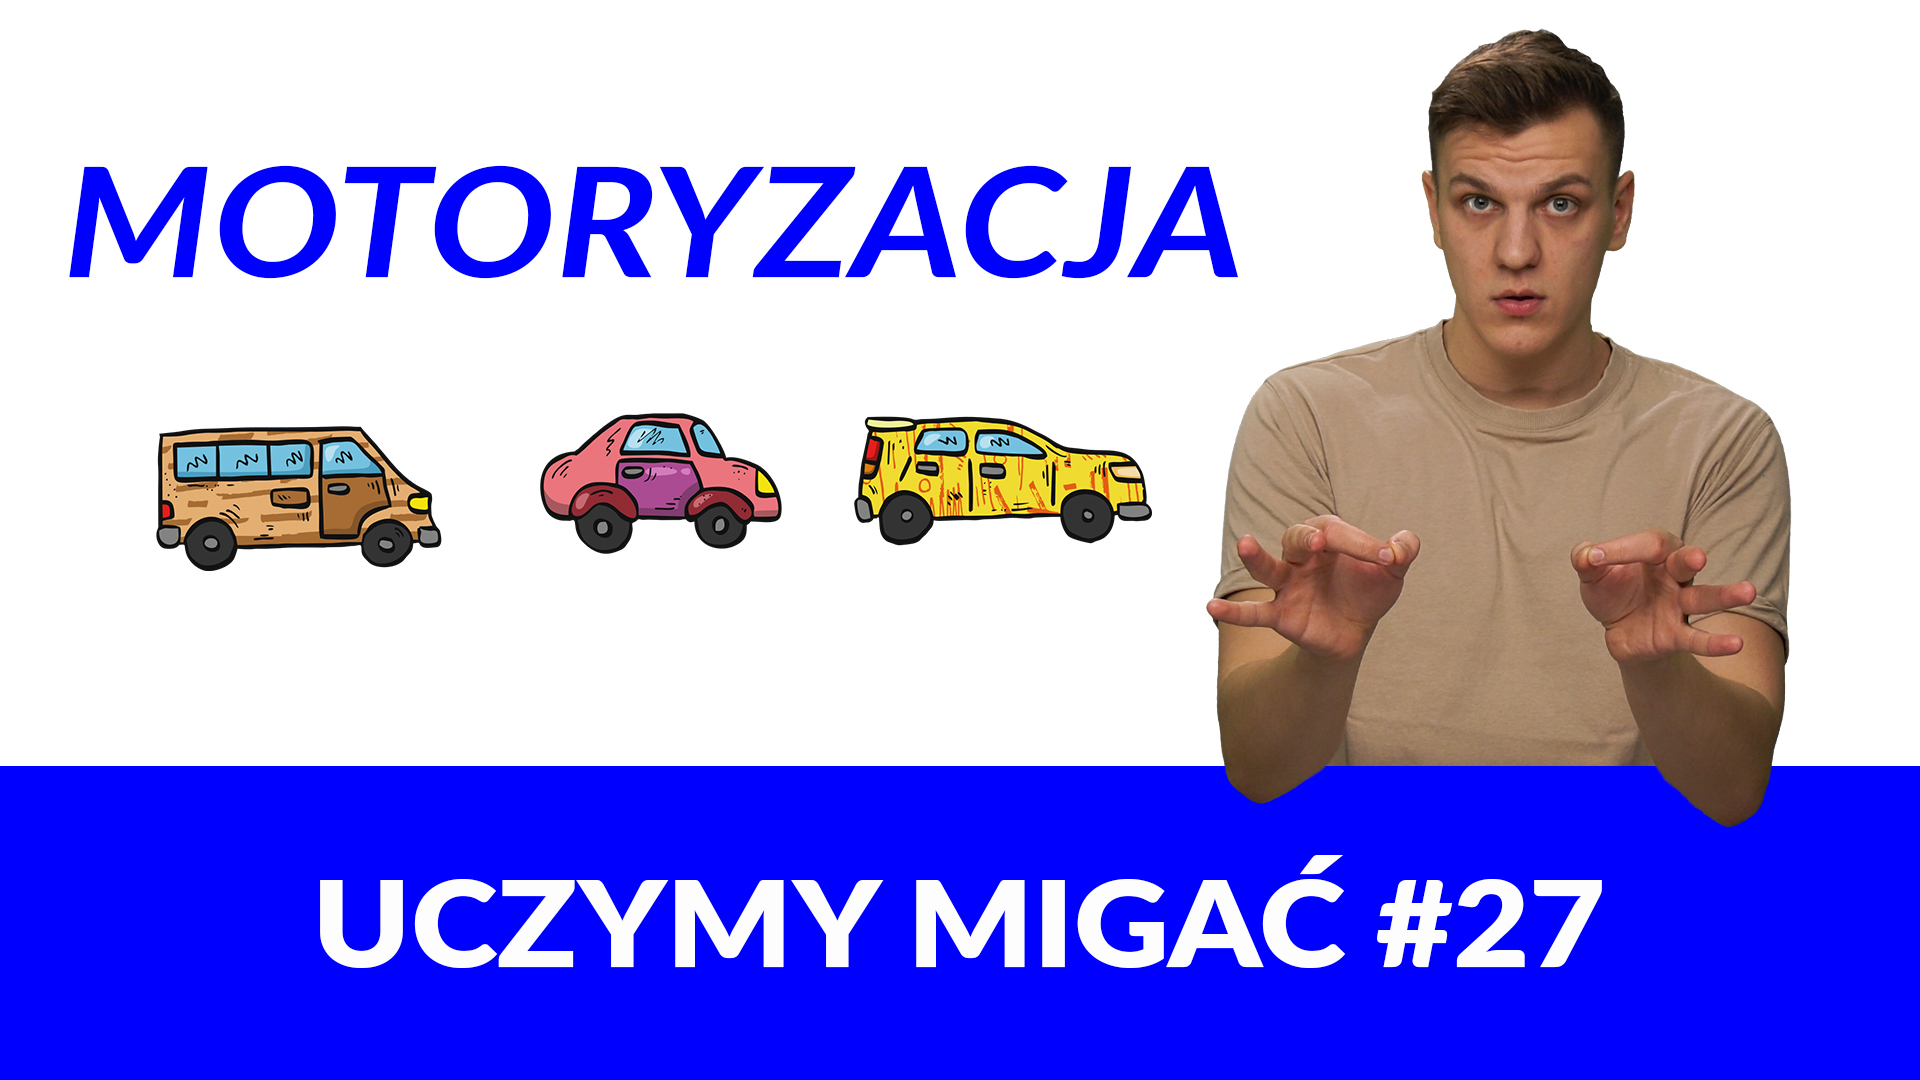 Grafika do filmu z nauką języka migowego. Po prawej prowadzący, Kuba Malik, pokazujący znak „samochód” w polskim języku migowym. Po lewej niebieski napis „Motoryzacja”, niżej rysunki samochodów oraz biały napis na niebieskim tle: „Uczymy migać #27“.